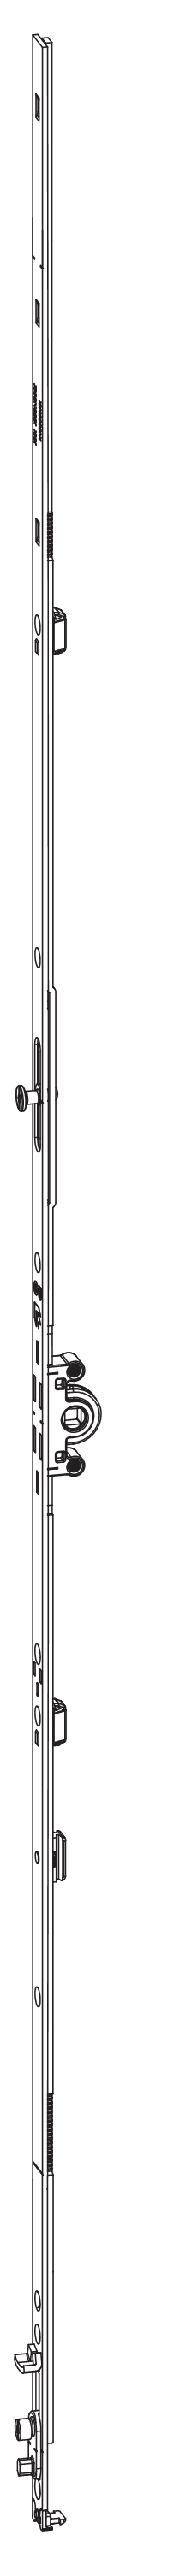 GU-ITALIA -  Cremonese UNI-JET anta ribalta altezza maniglia fissa con piedino senza dss per ribalta e con bilanciere - gr / dim. 1690 - entrata 15 - alt. man. 600 - lbb/hbb 1601 - 1850